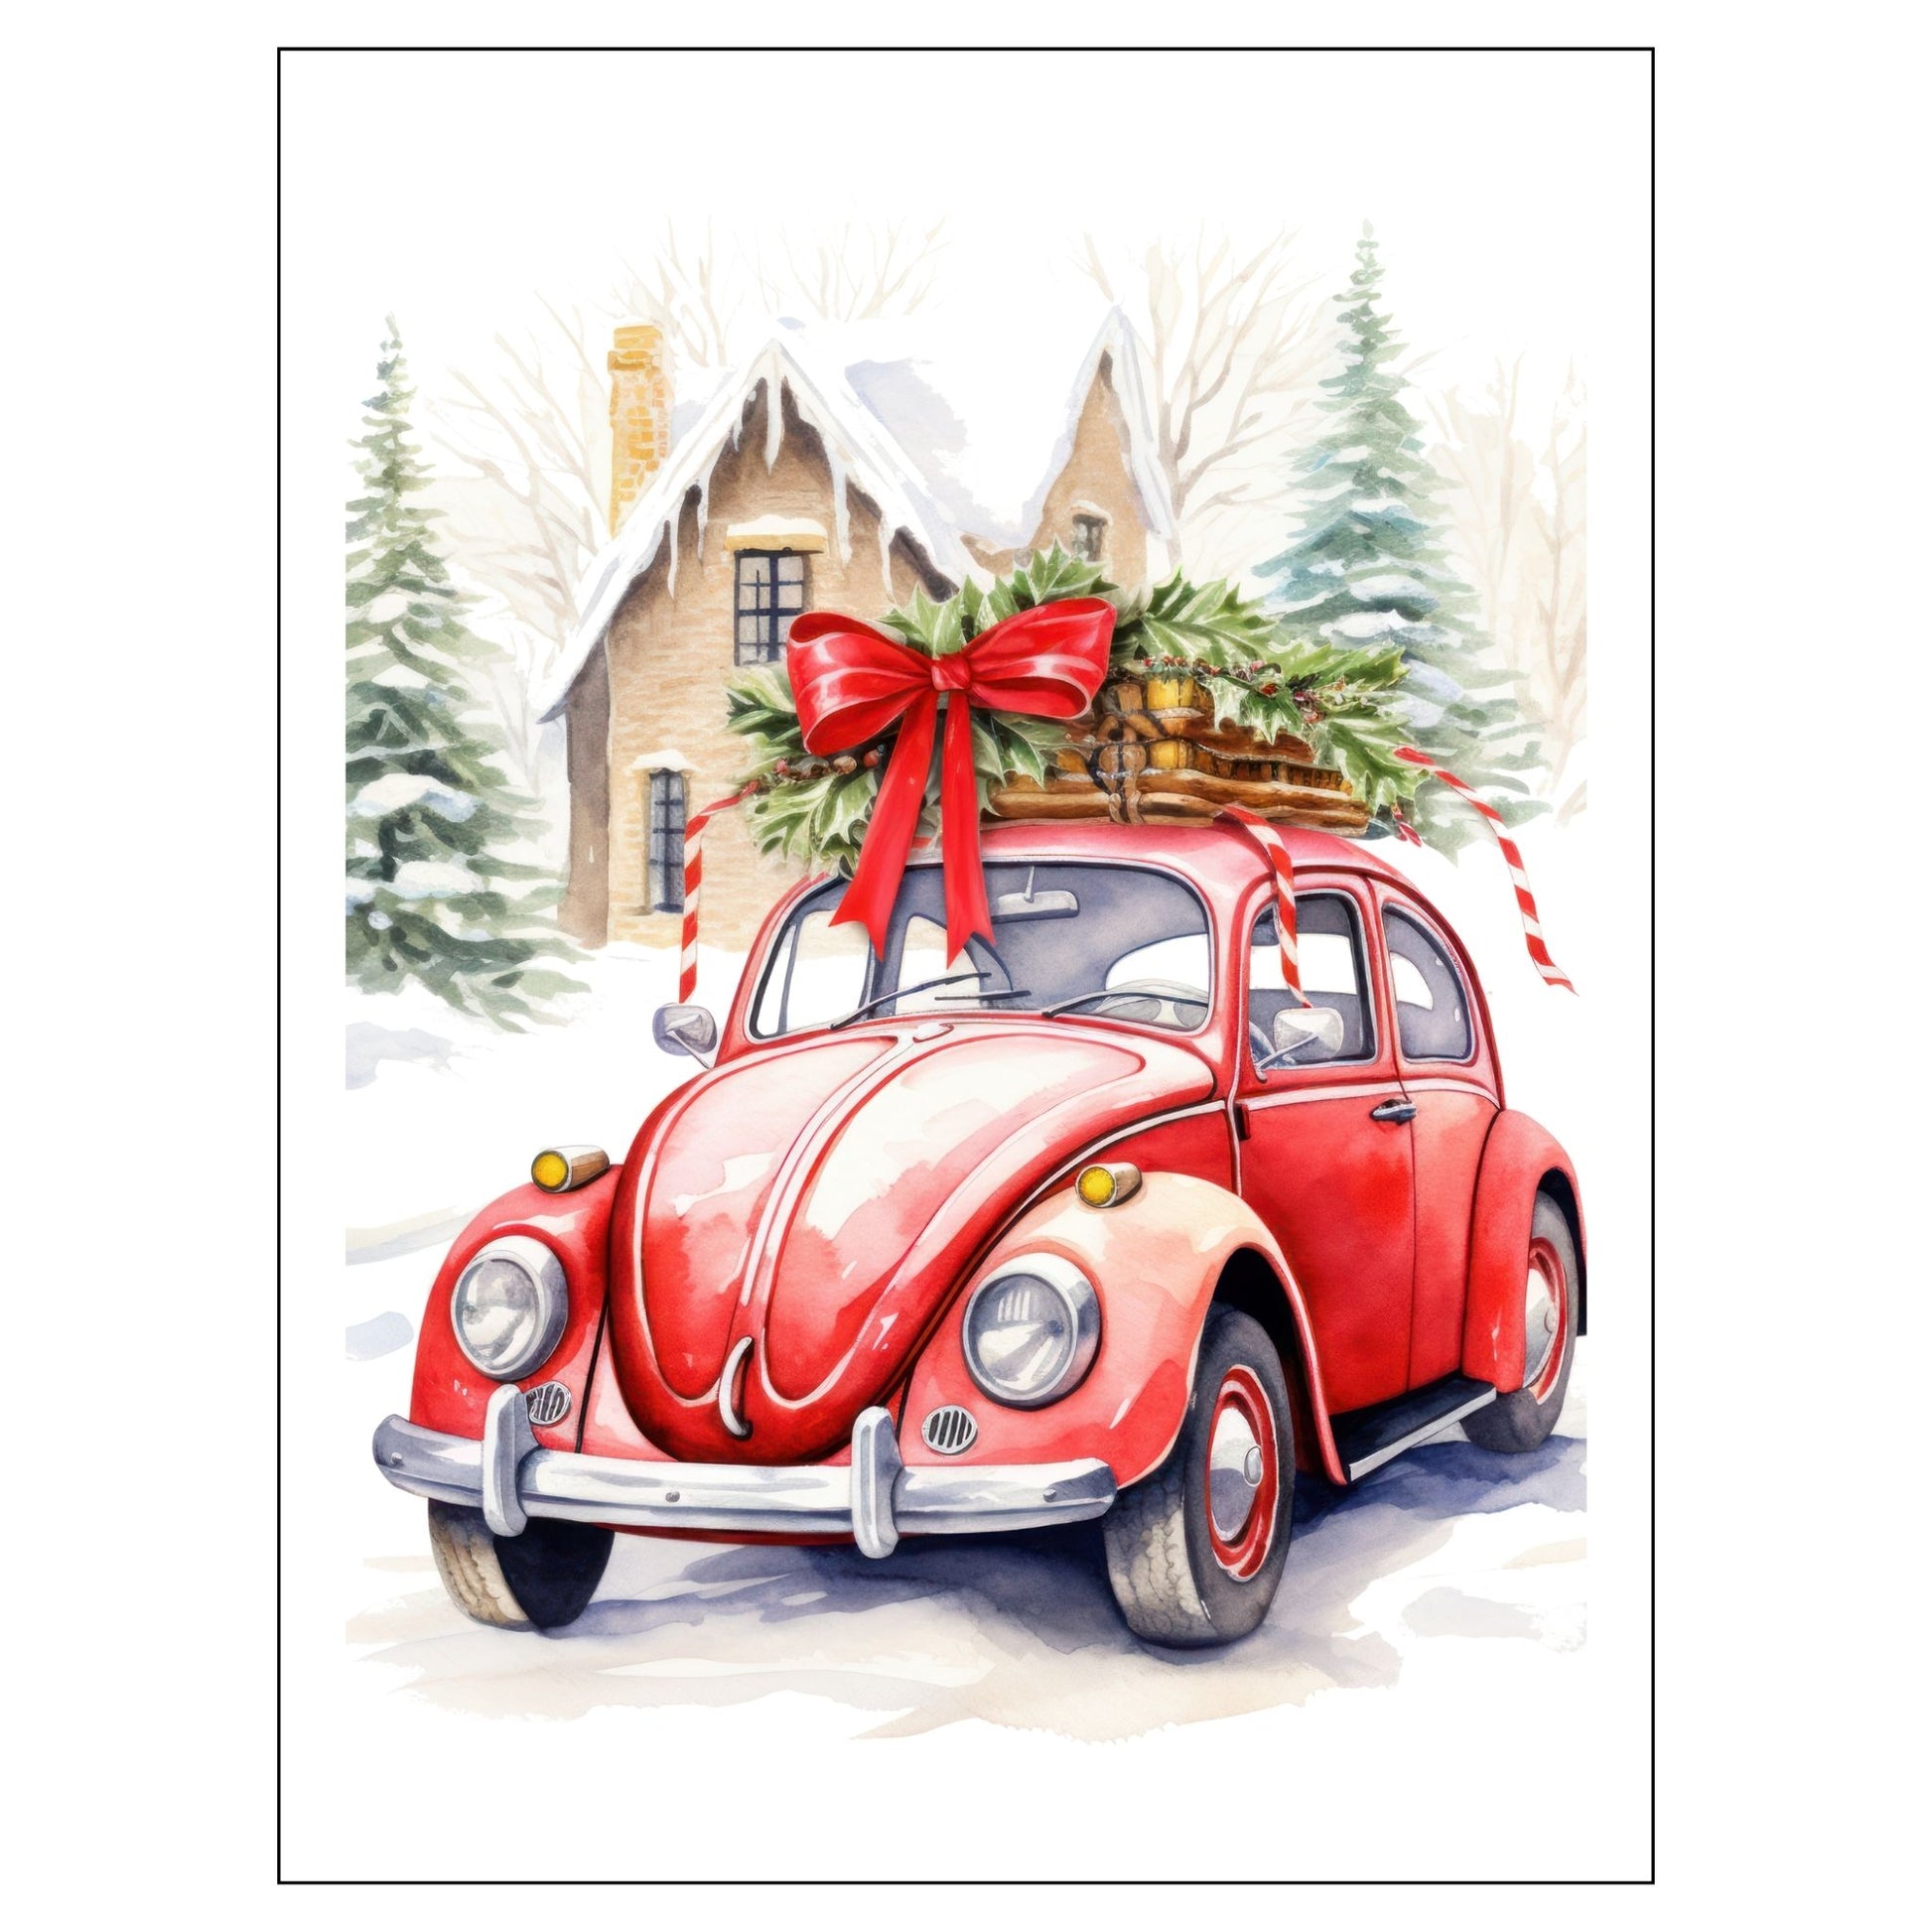 Grafisk julemotiv av gammel, rød volkswagen boble. Bilen står foran et hus, og på taket er den lastet med juledekorasjoner. Motivet trykkes på plakat og lerret. 